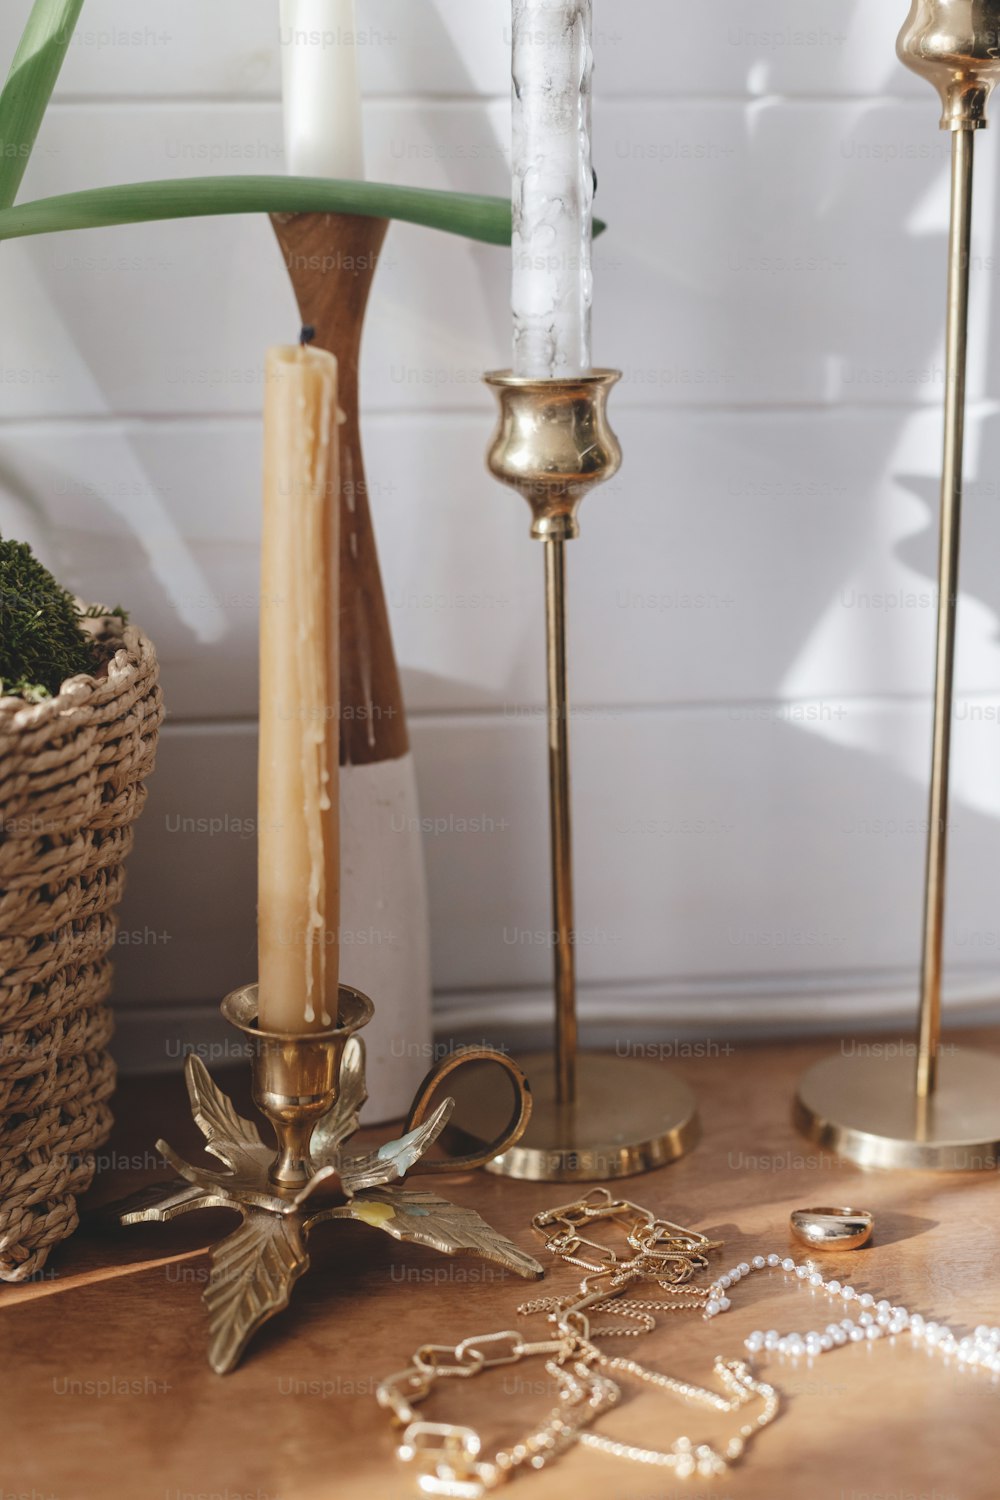 Accessori moderni in oro e perle su tavola con candelieri vintage. Elegante collana e anello d'oro su sfondo di legno in luce soleggiata.